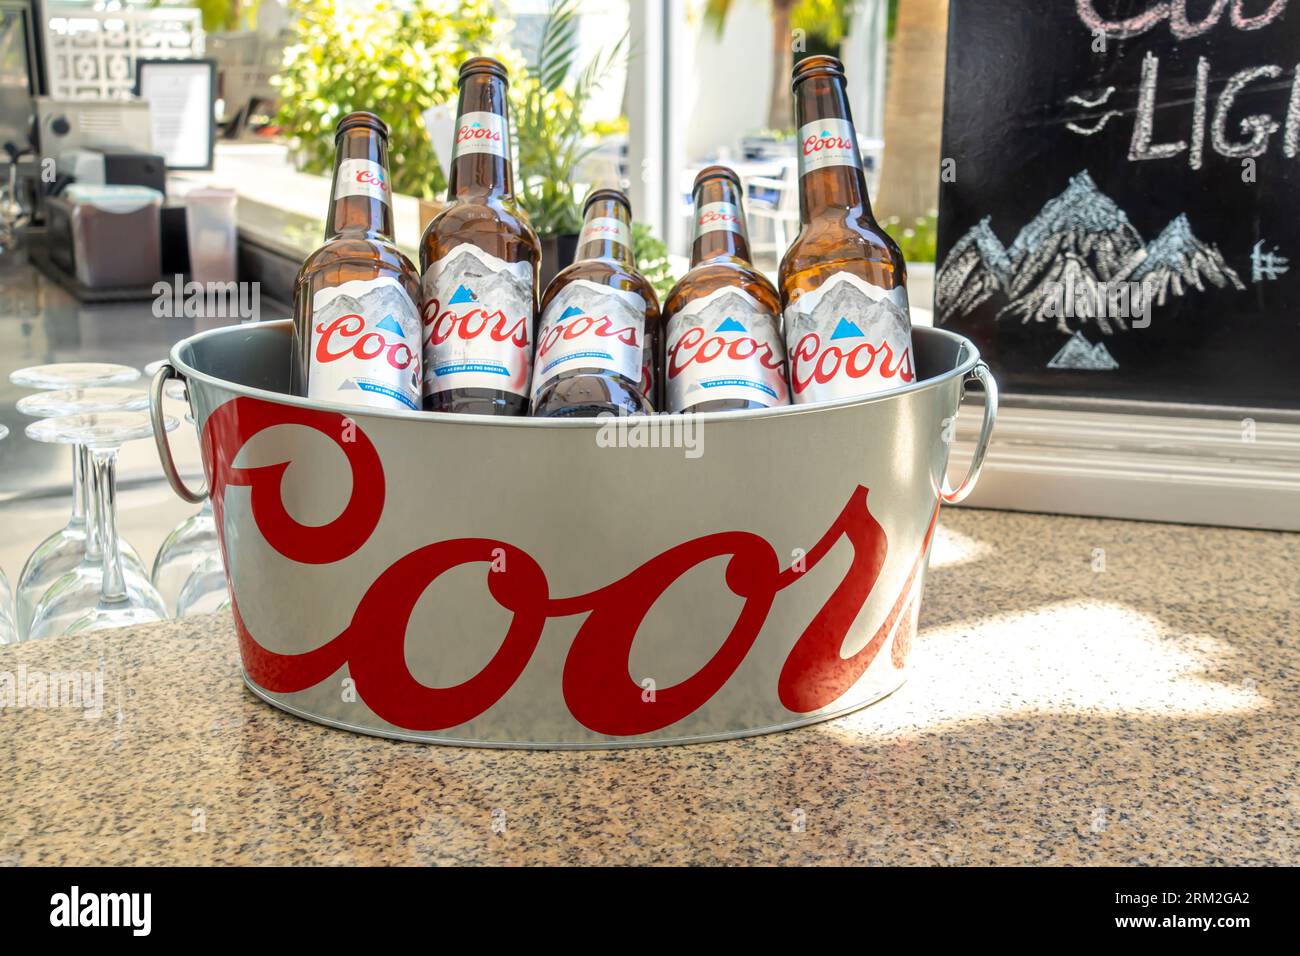 Coor beer bottles in a branded bucket cooler Stock Photo